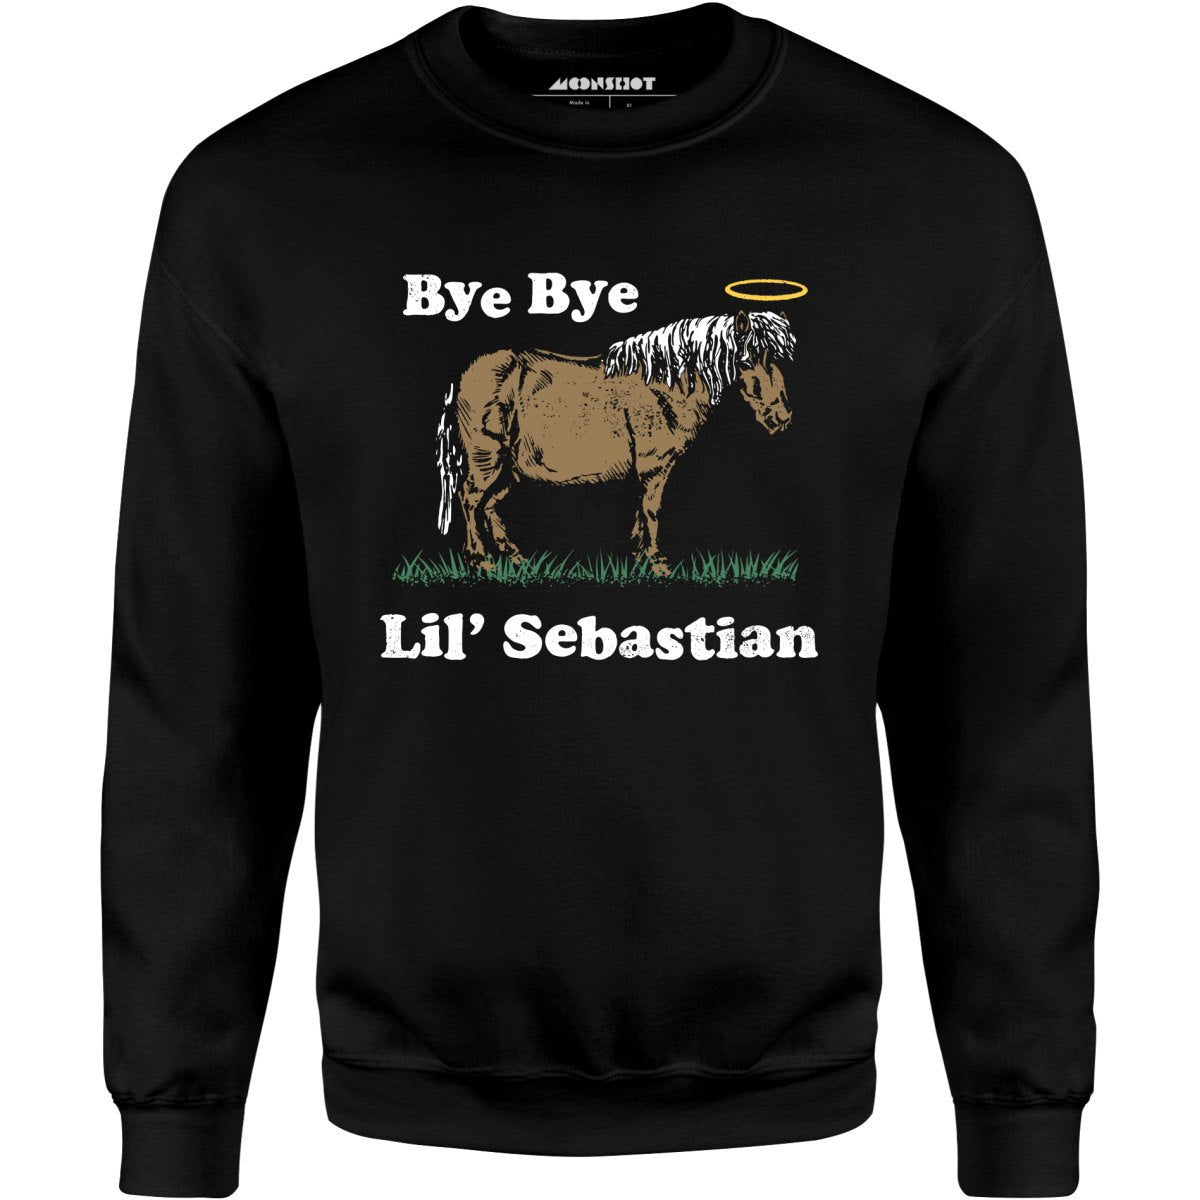 Bye Bye Lil' Sebastian - Unisex Sweatshirt